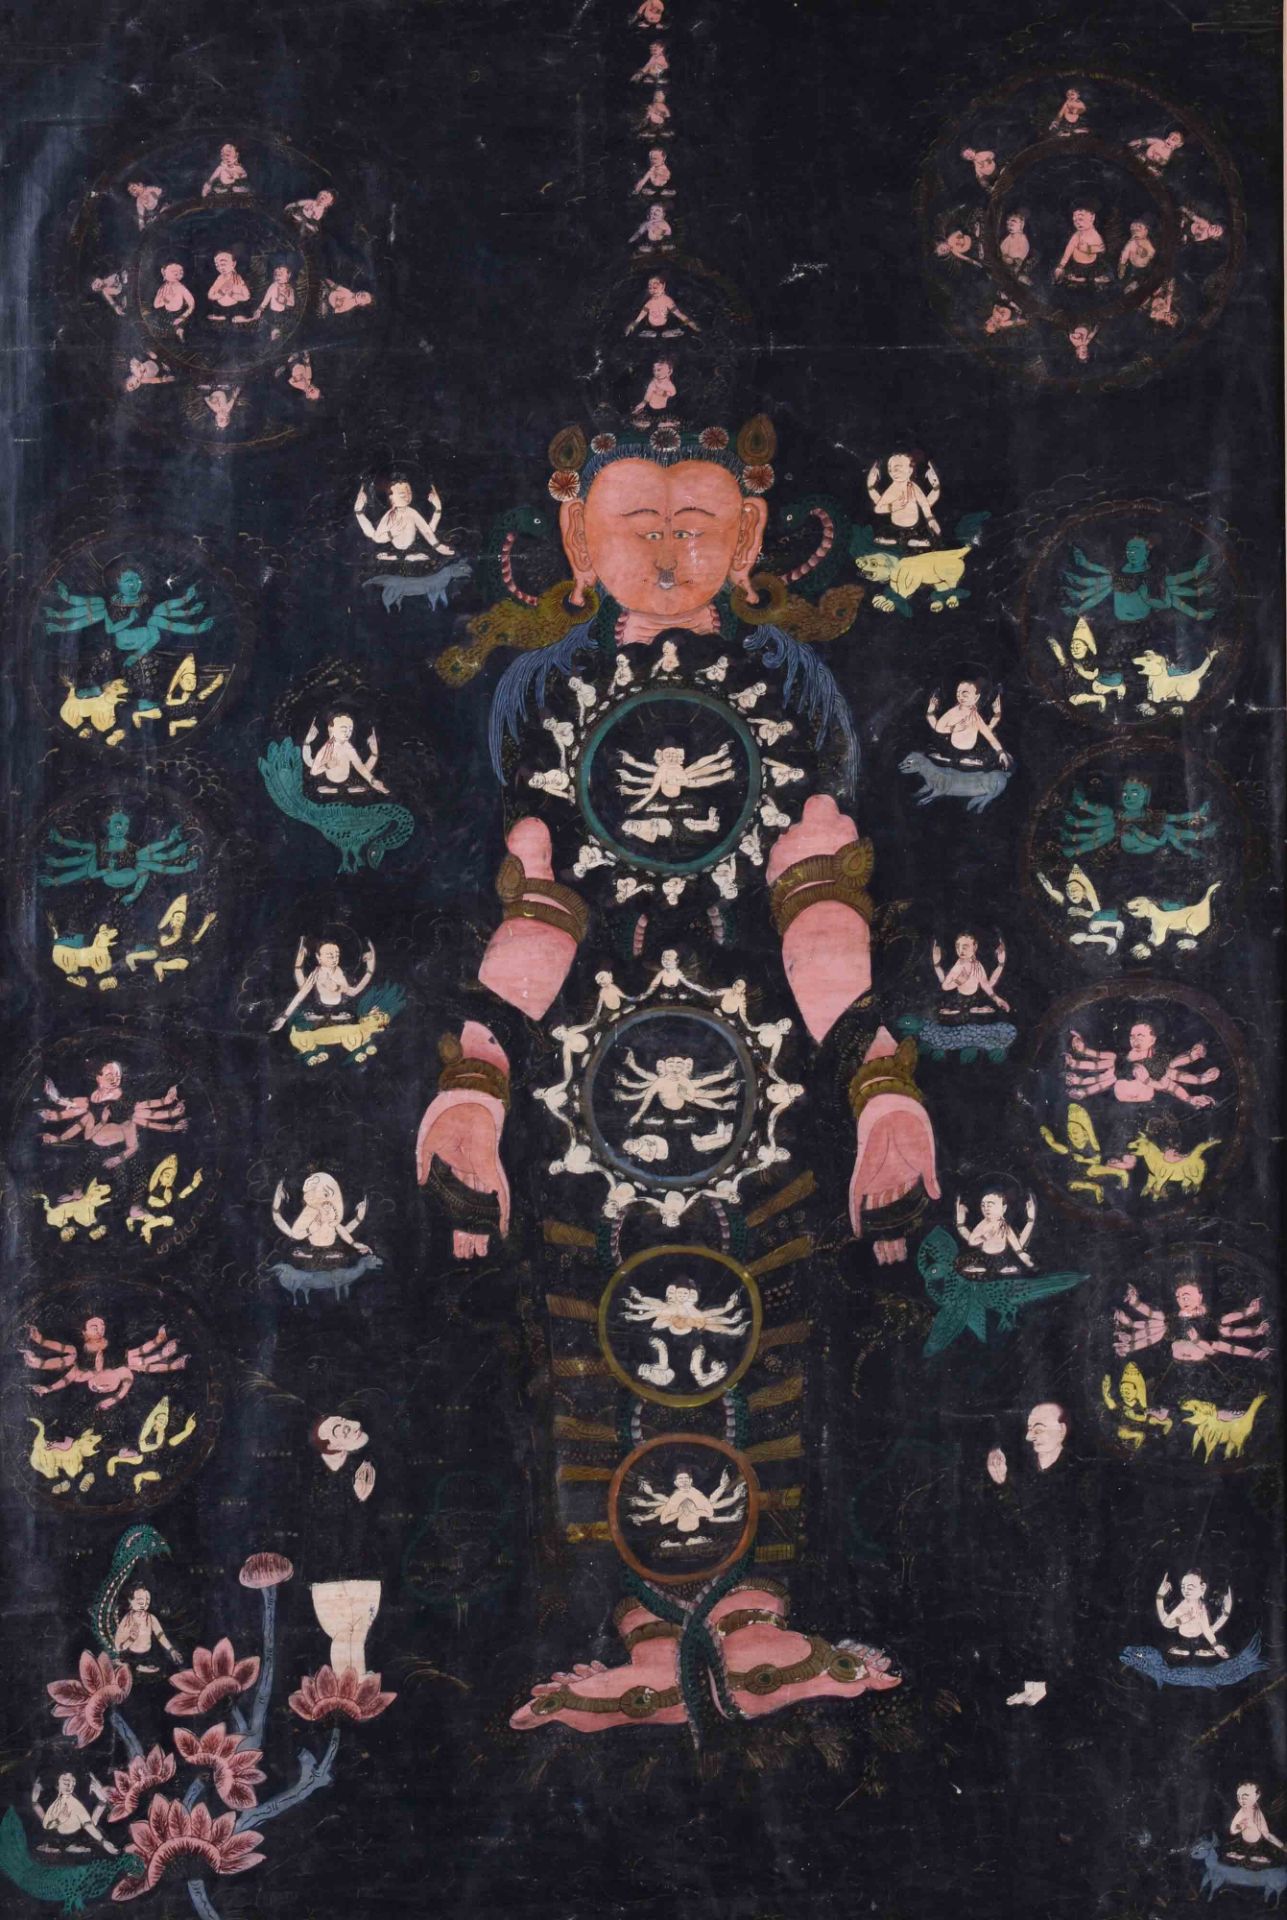 Tangka Tibeto-Chinese 19th century